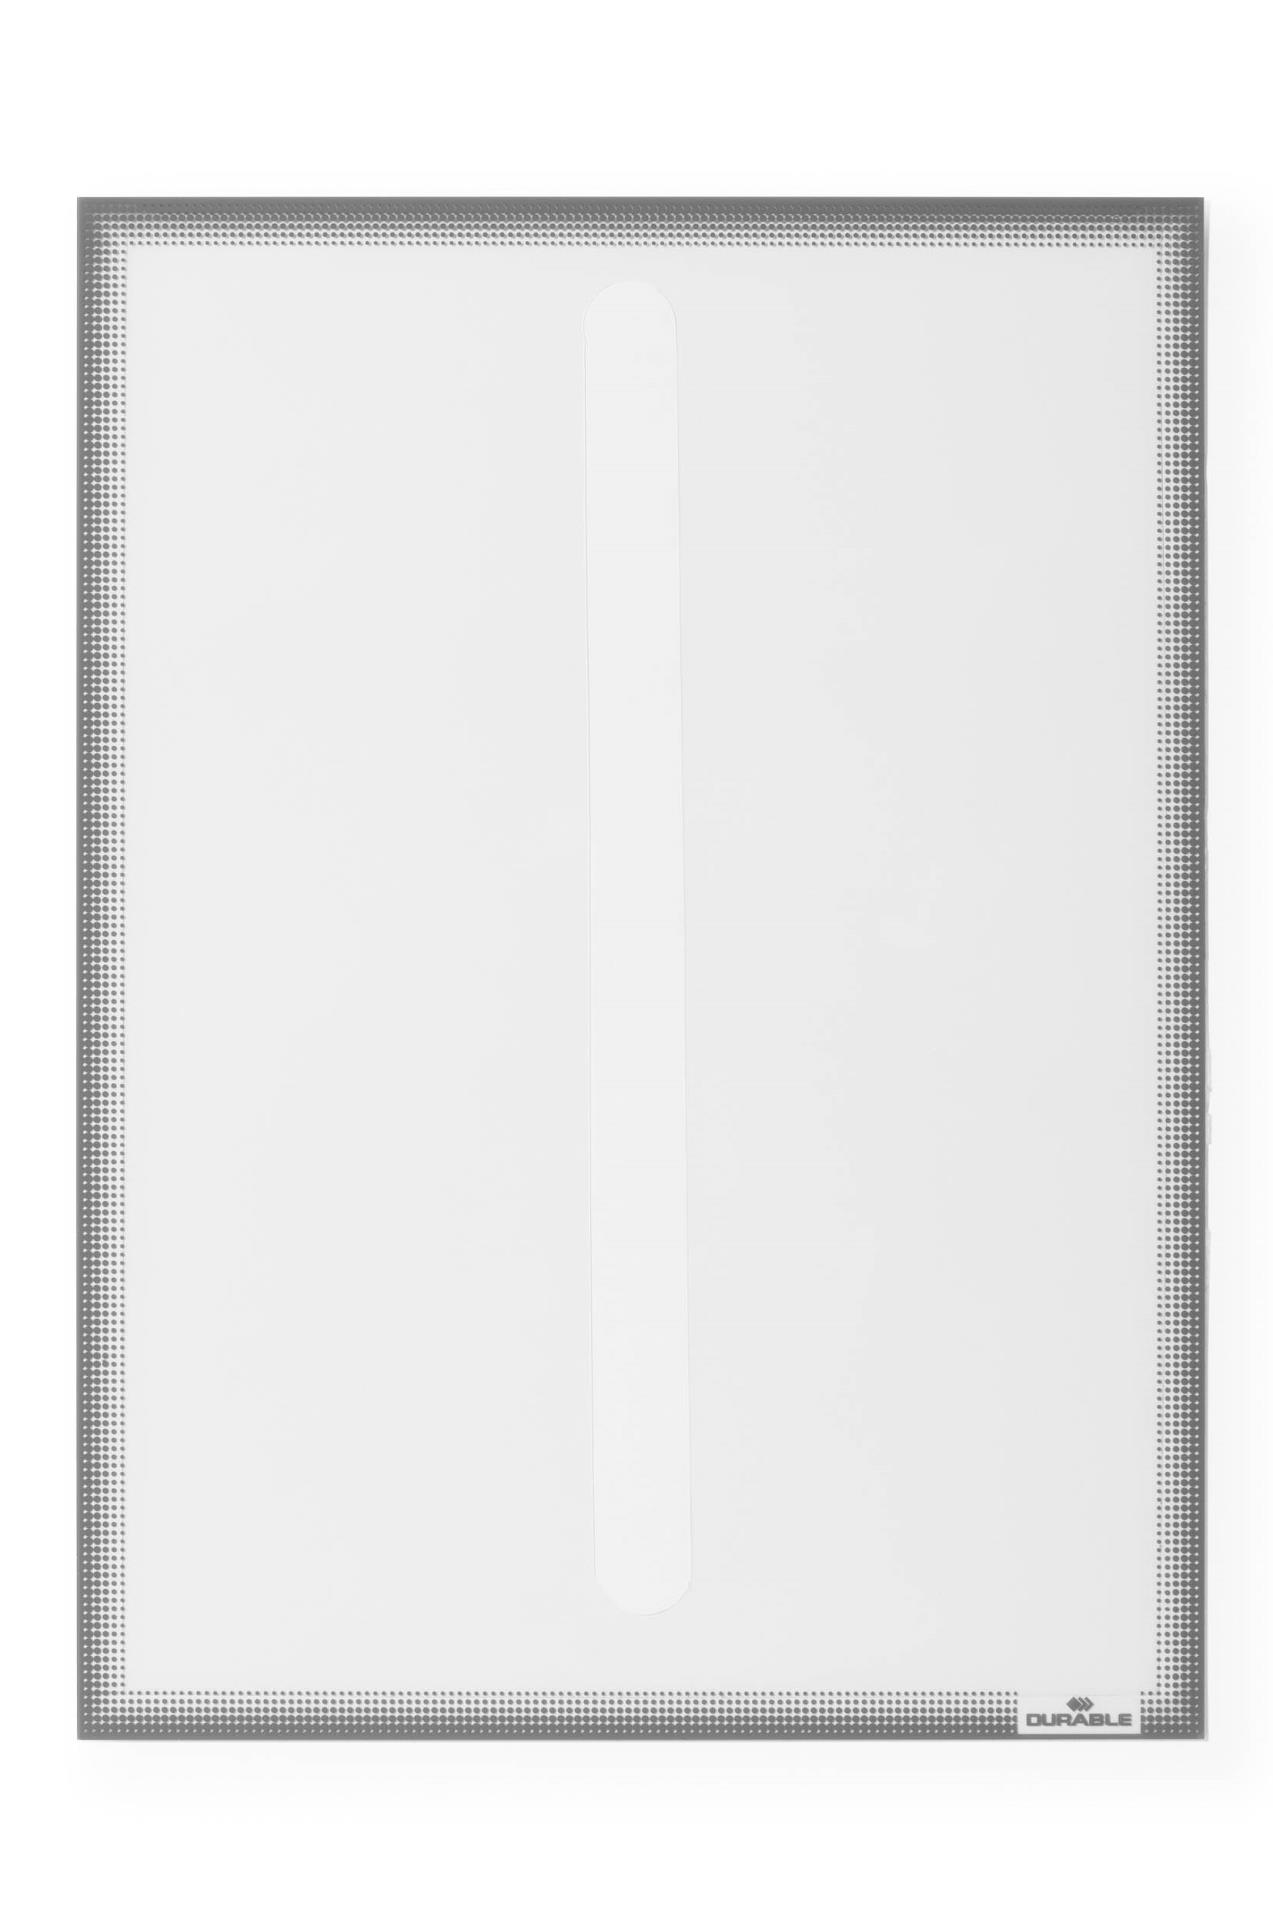 Statická infokapsa Durable, A4, rám s tečkovaným designem, 5 ks